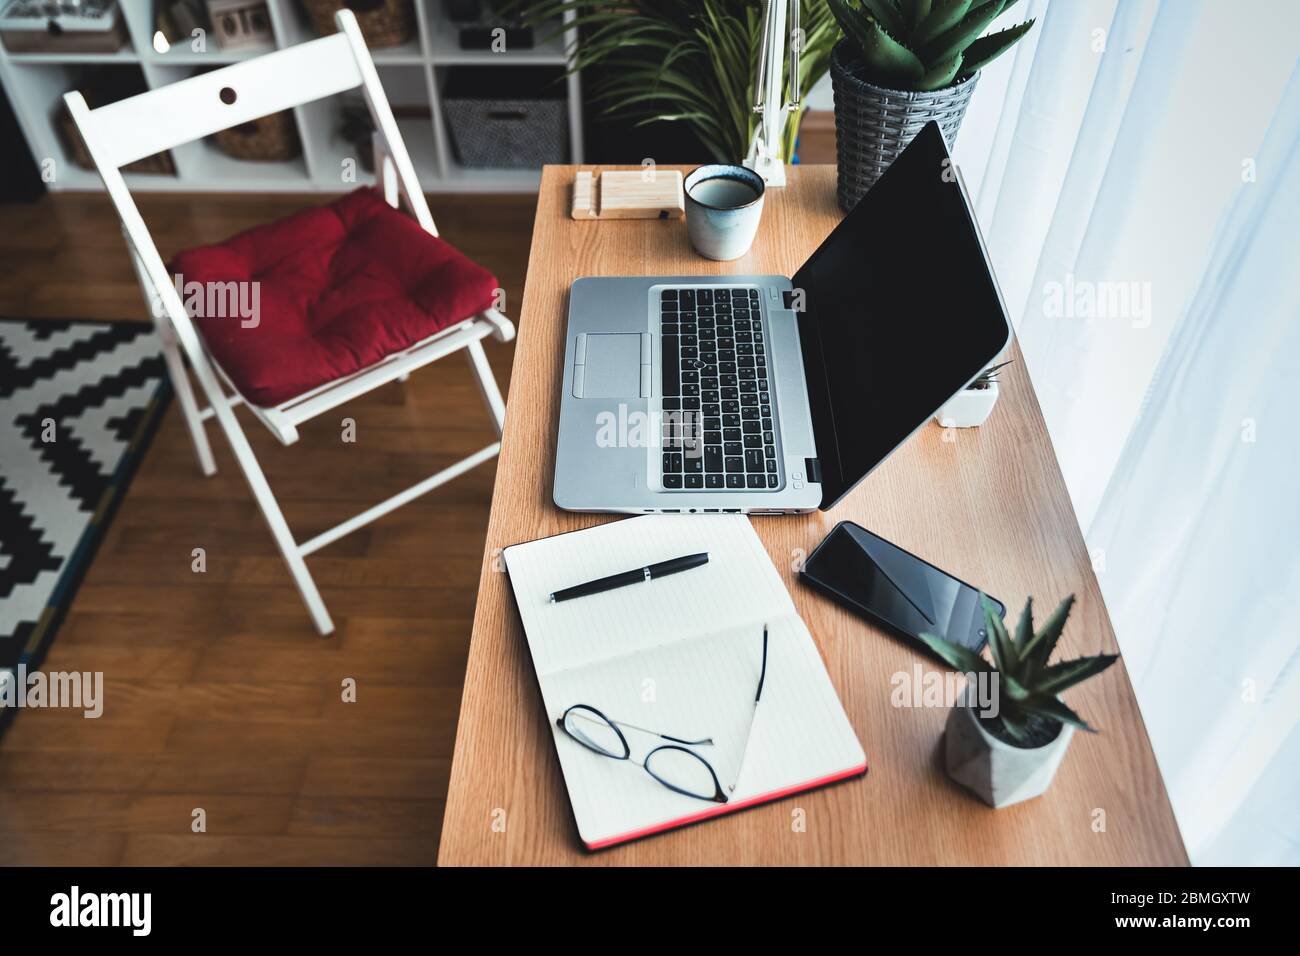 Draufsicht auf einen Schreibtisch mit Laptop in einem kreativen Home Office. Auf dem Tisch liegend: Smartphone, Notebook, Kaffeebecher, Stift, Augengläser, grüne Pflanzen. Stockfoto